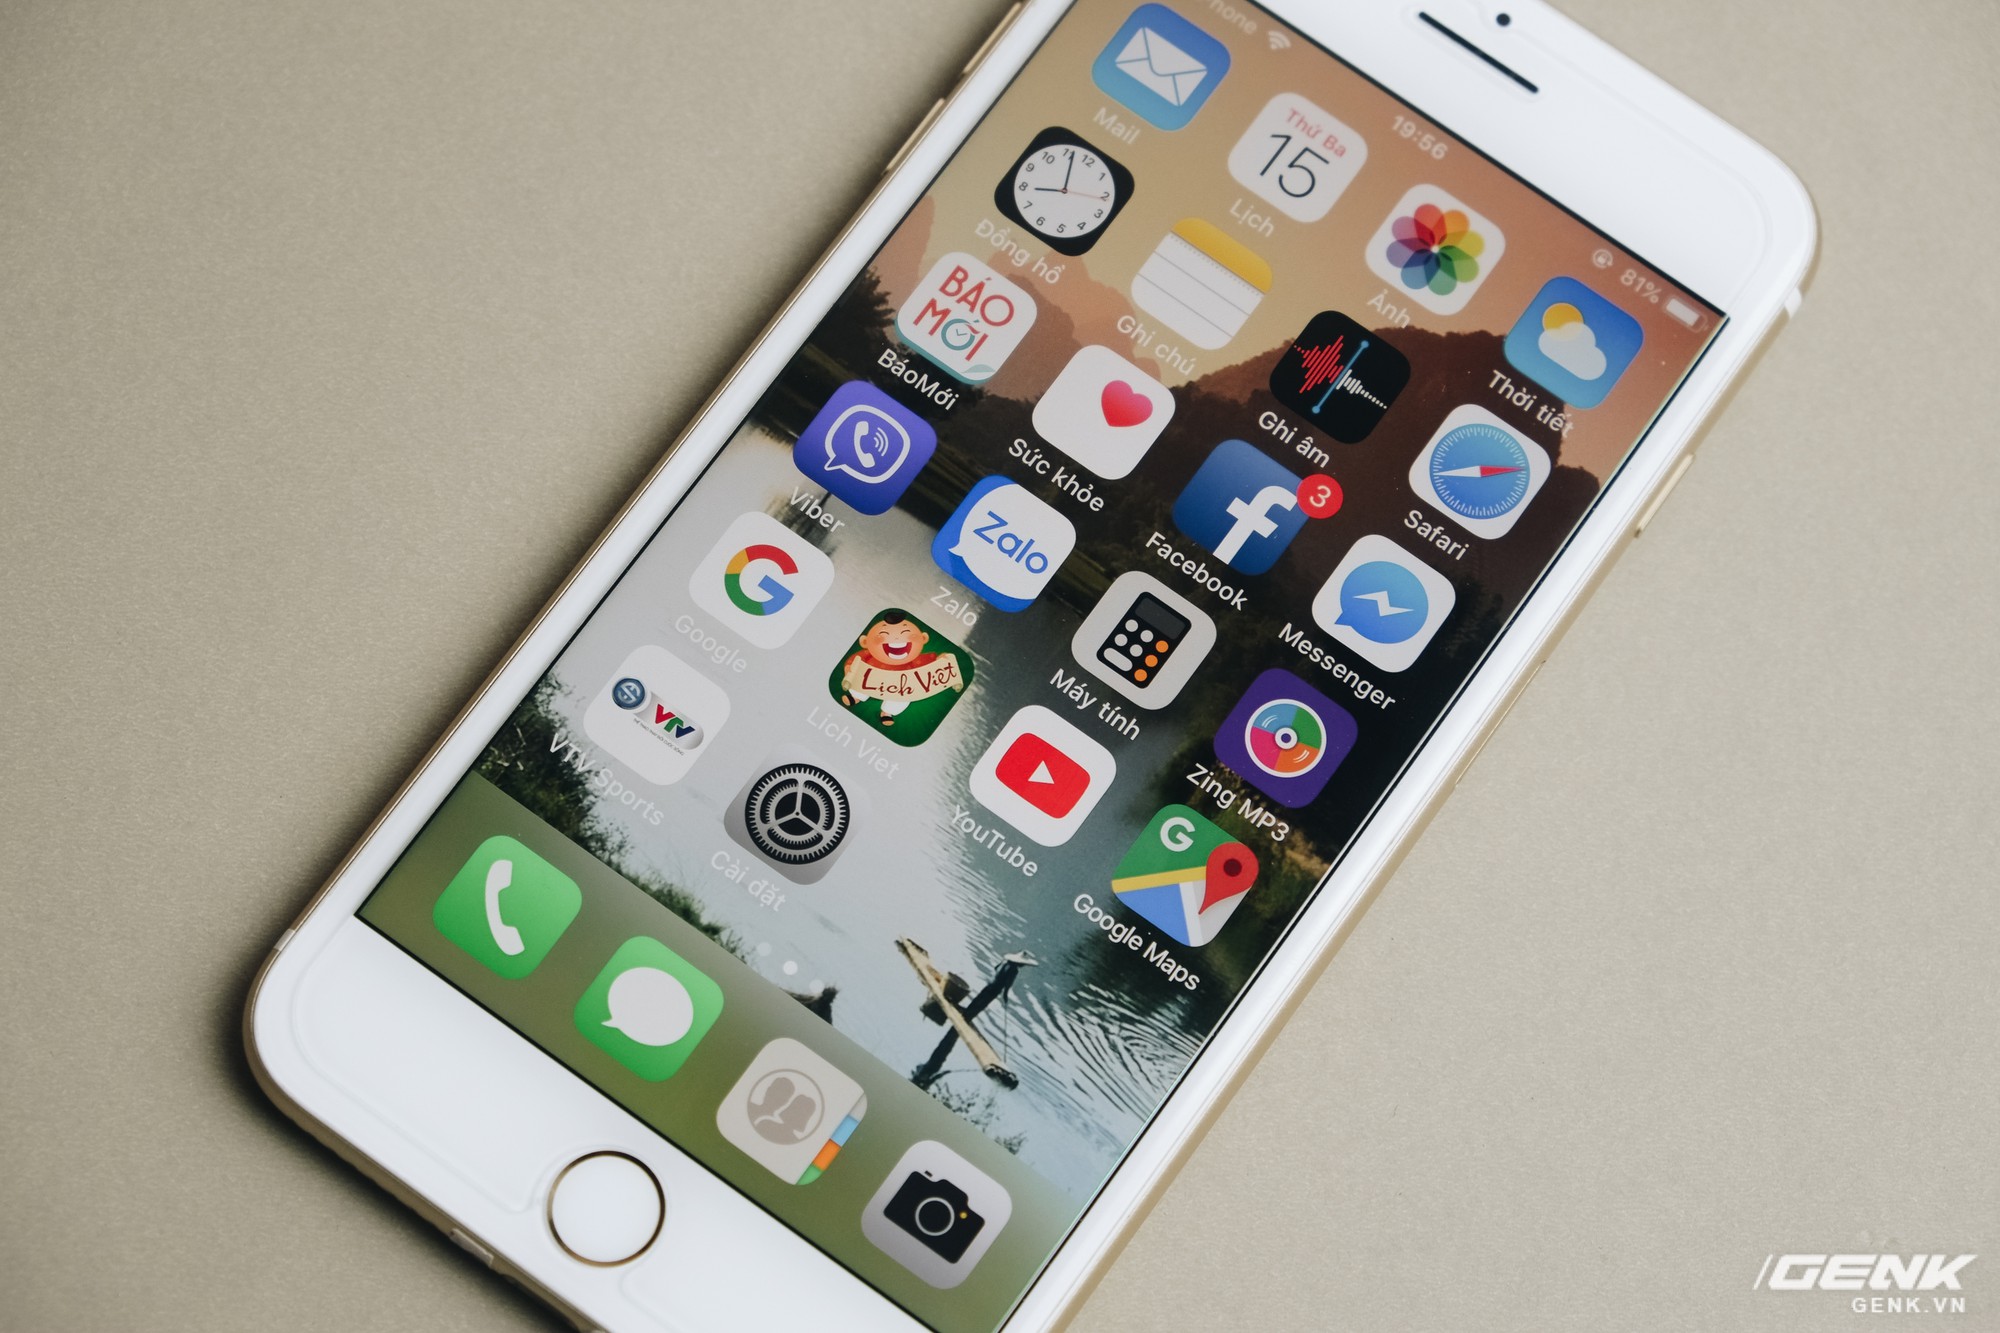 iPhone 9 Plus: Nếu bạn đang tìm kiếm một chiếc điện thoại cao cấp với thiết kế đẹp mắt và hiệu năng mạnh mẽ, thì iPhone 9 Plus chính là điều bạn đang tìm kiếm. Với màn hình lớn và camera chất lượng cao, chiếc điện thoại này sẽ mang đến cho bạn những trải nghiệm tuyệt vời nhất. Hãy sở hữu ngay iPhone 9 Plus và trải nghiệm ngay hôm nay!